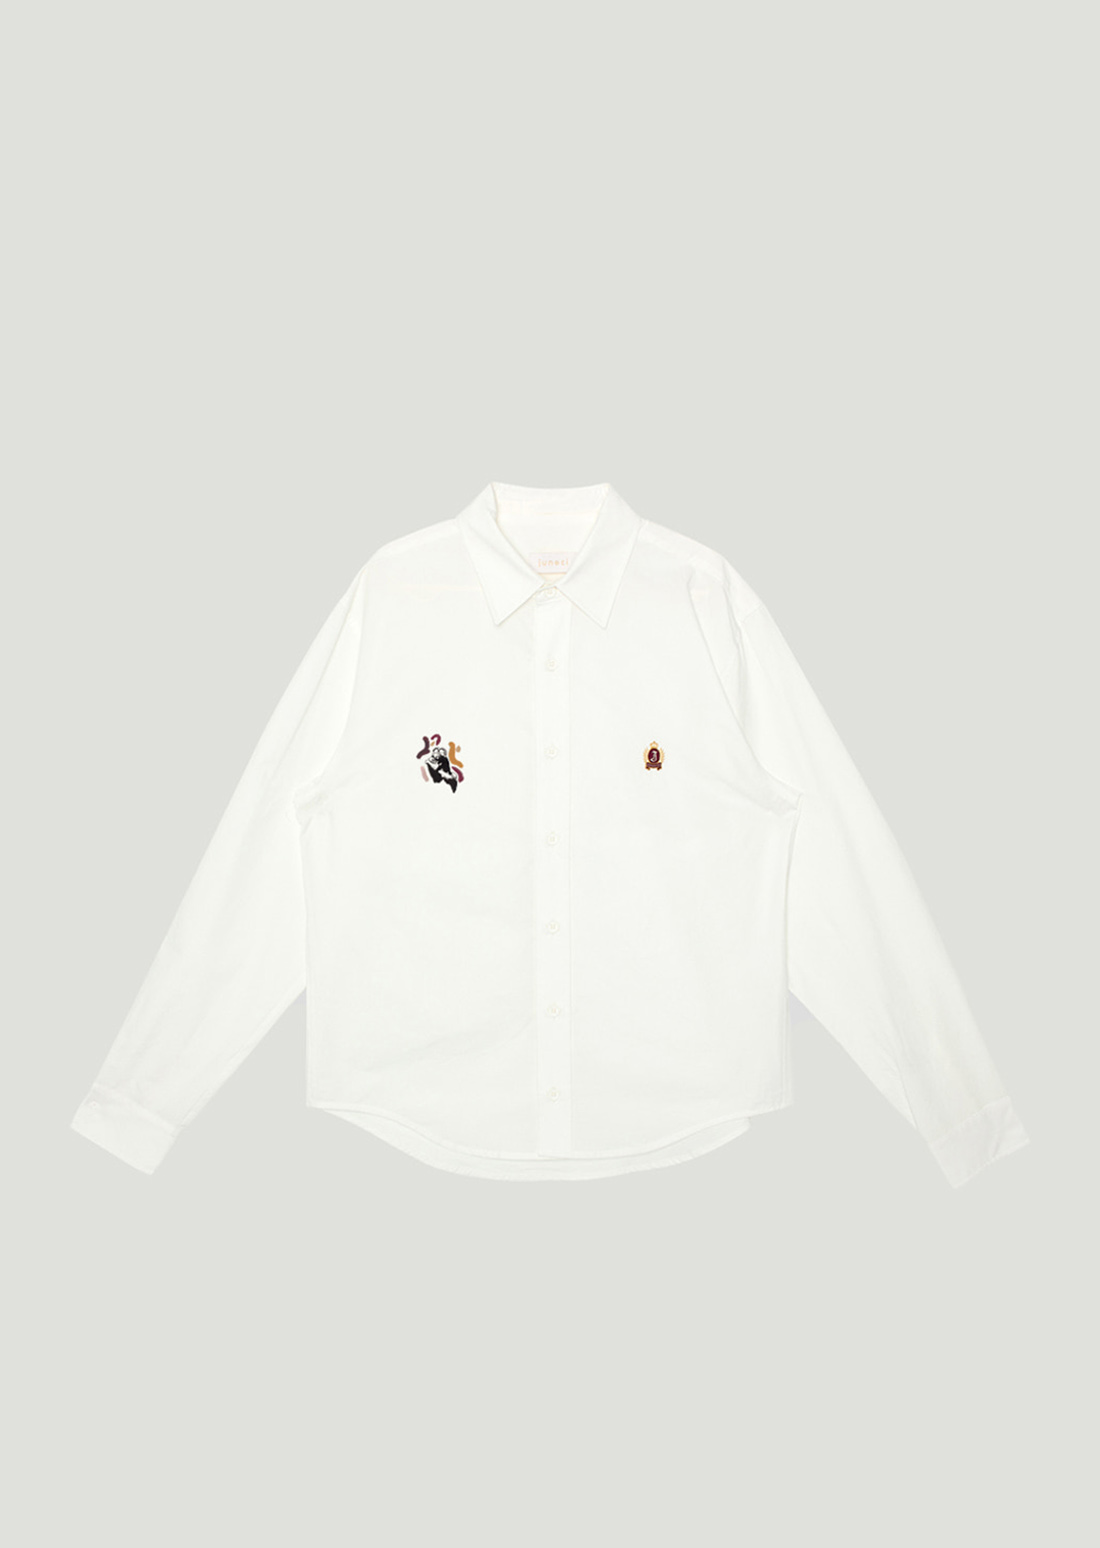 J Emblem Shirt (White) x MIN KYUNGHEE